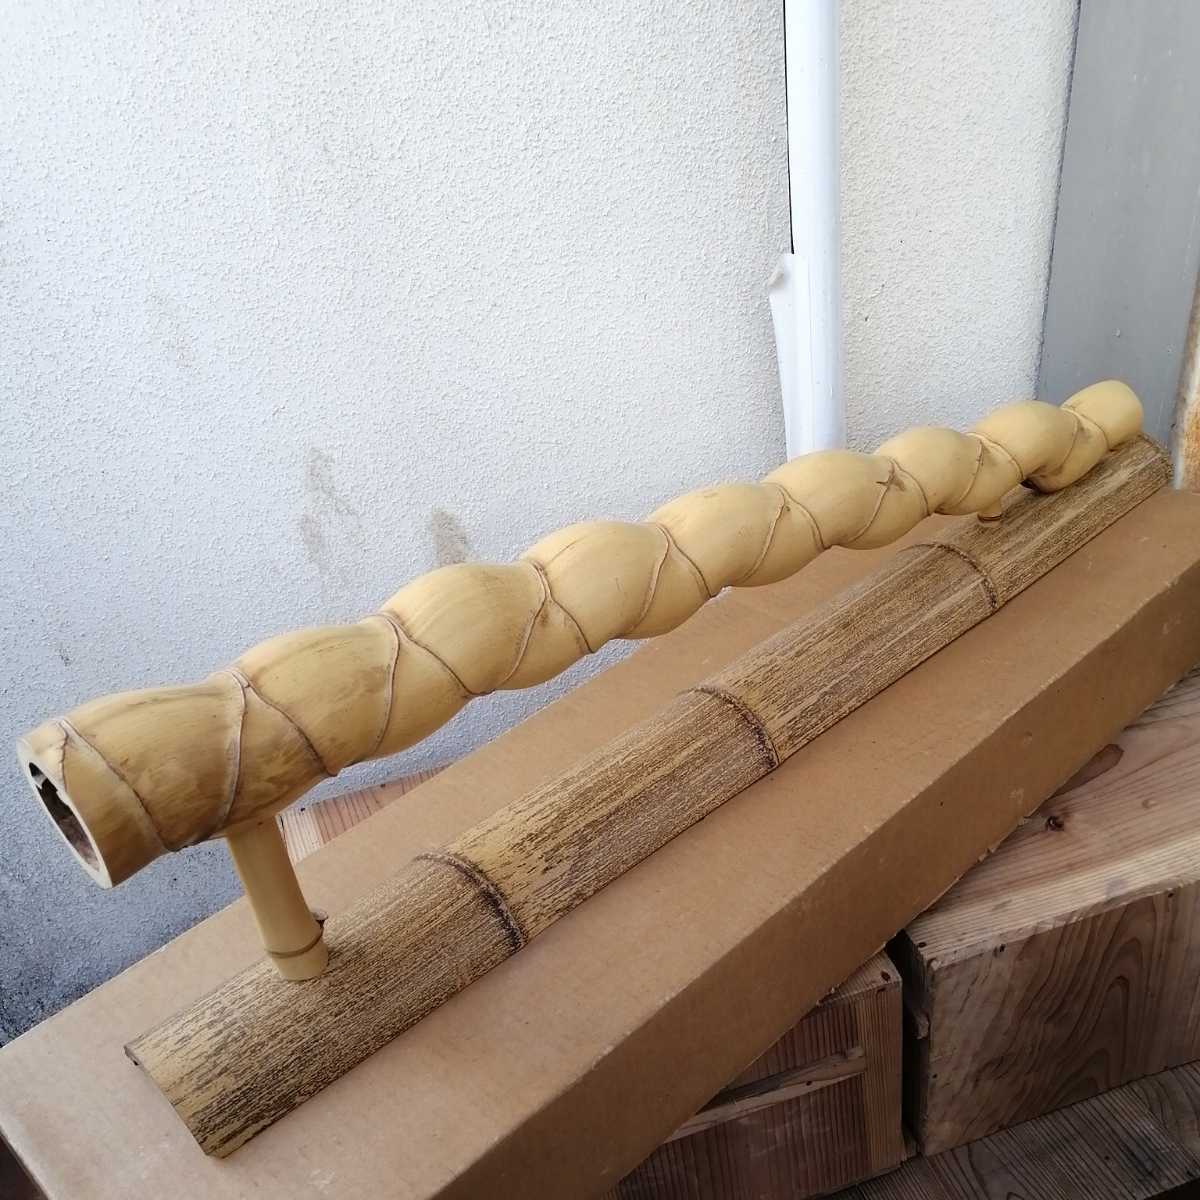 炉屏 結界 亀甲竹 茶道具 茶道 木製 竹細工